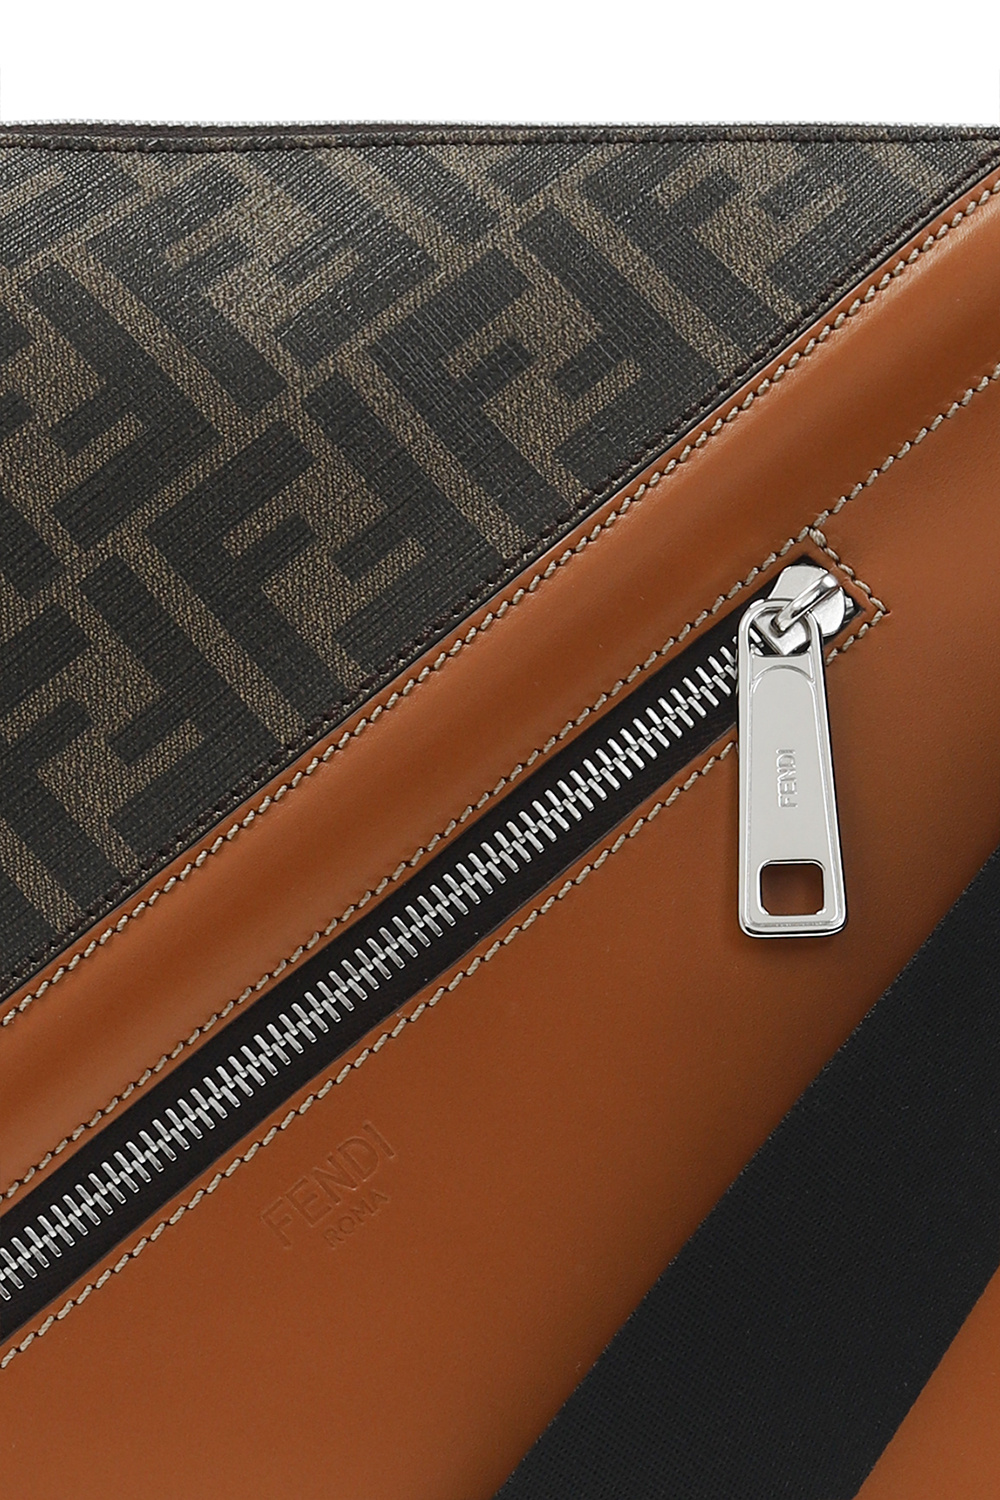 Fendi ‘Messenger’ handbags bag